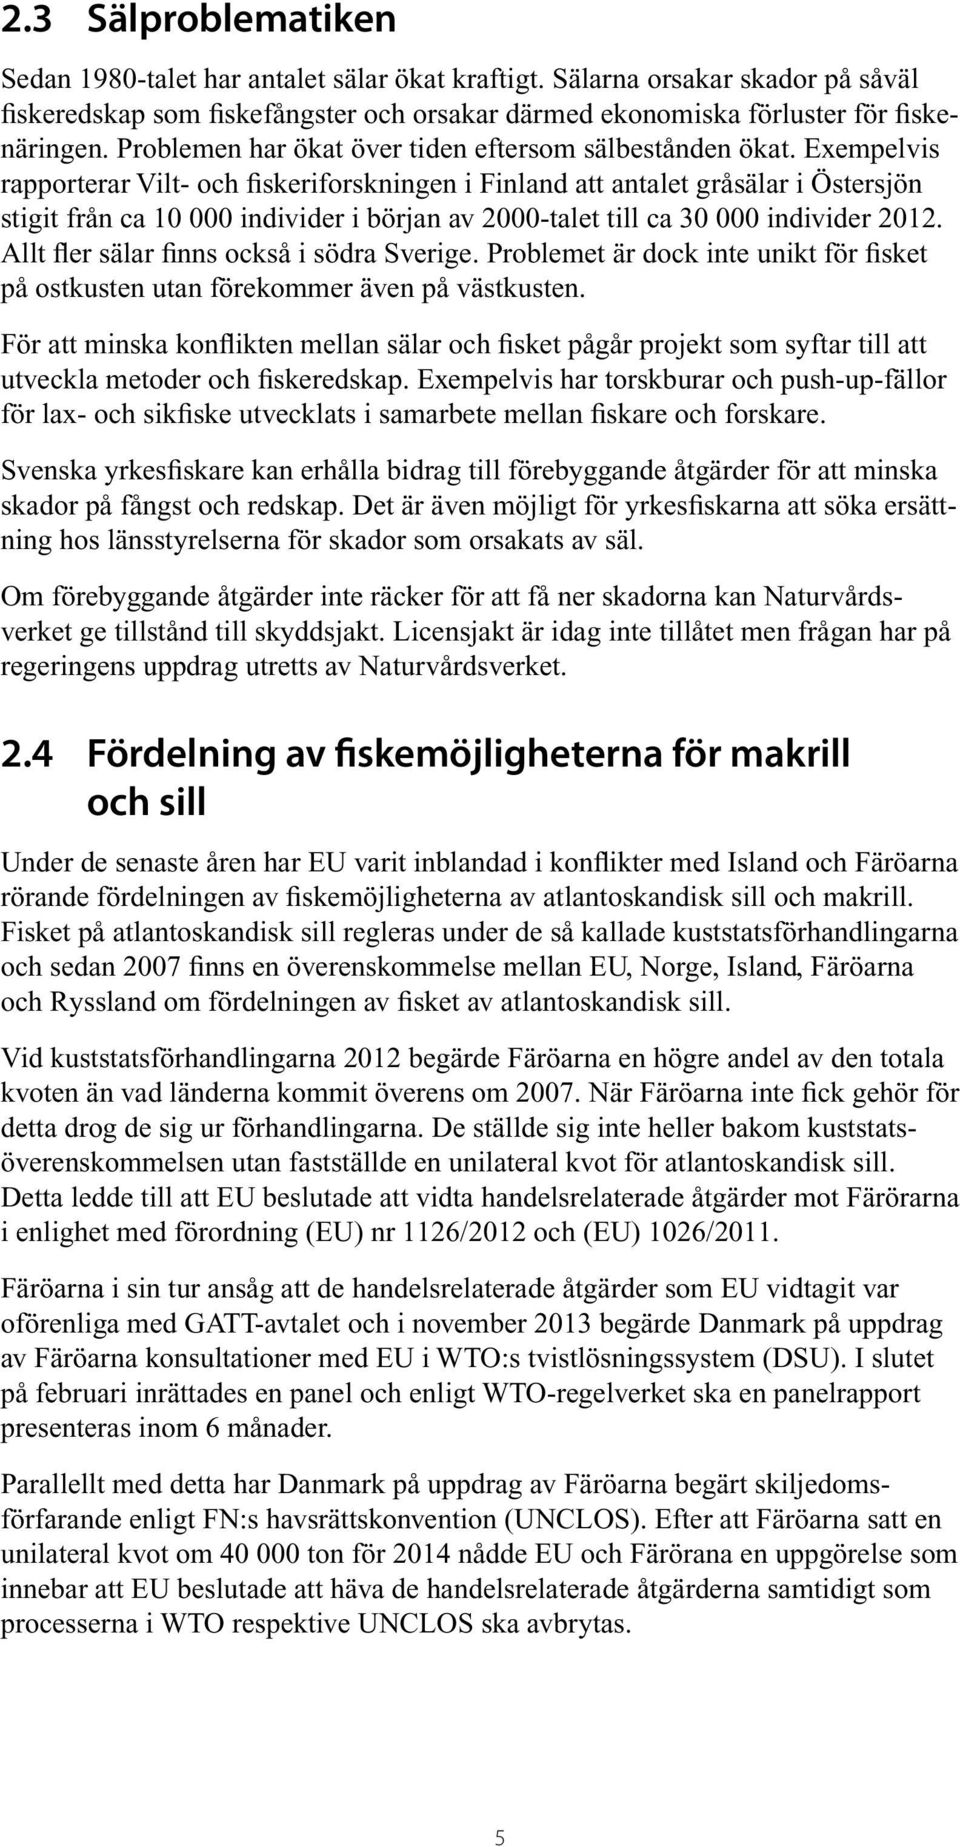 Exempelvis rapporterar Vilt- och fiskeriforskningen i Finland att antalet gråsälar i Östersjön stigit från ca 10 000 individer i början av 2000-talet till ca 30 000 individer 2012.